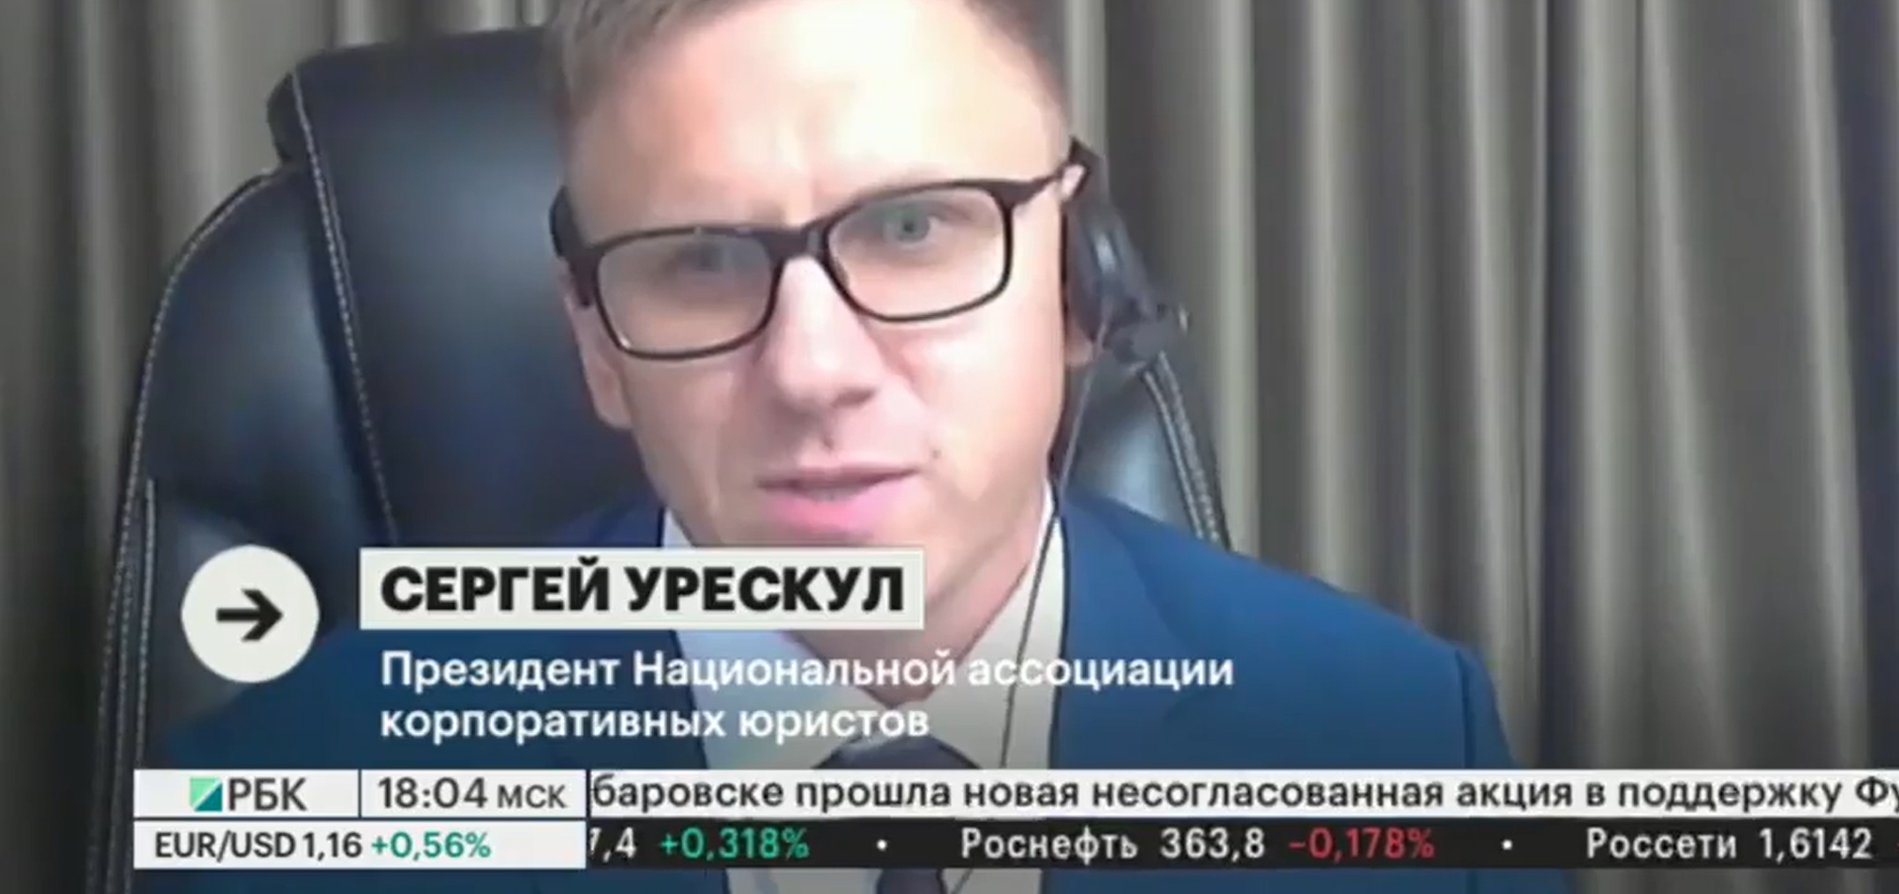 Сергей Урескул в федеральных СМИ